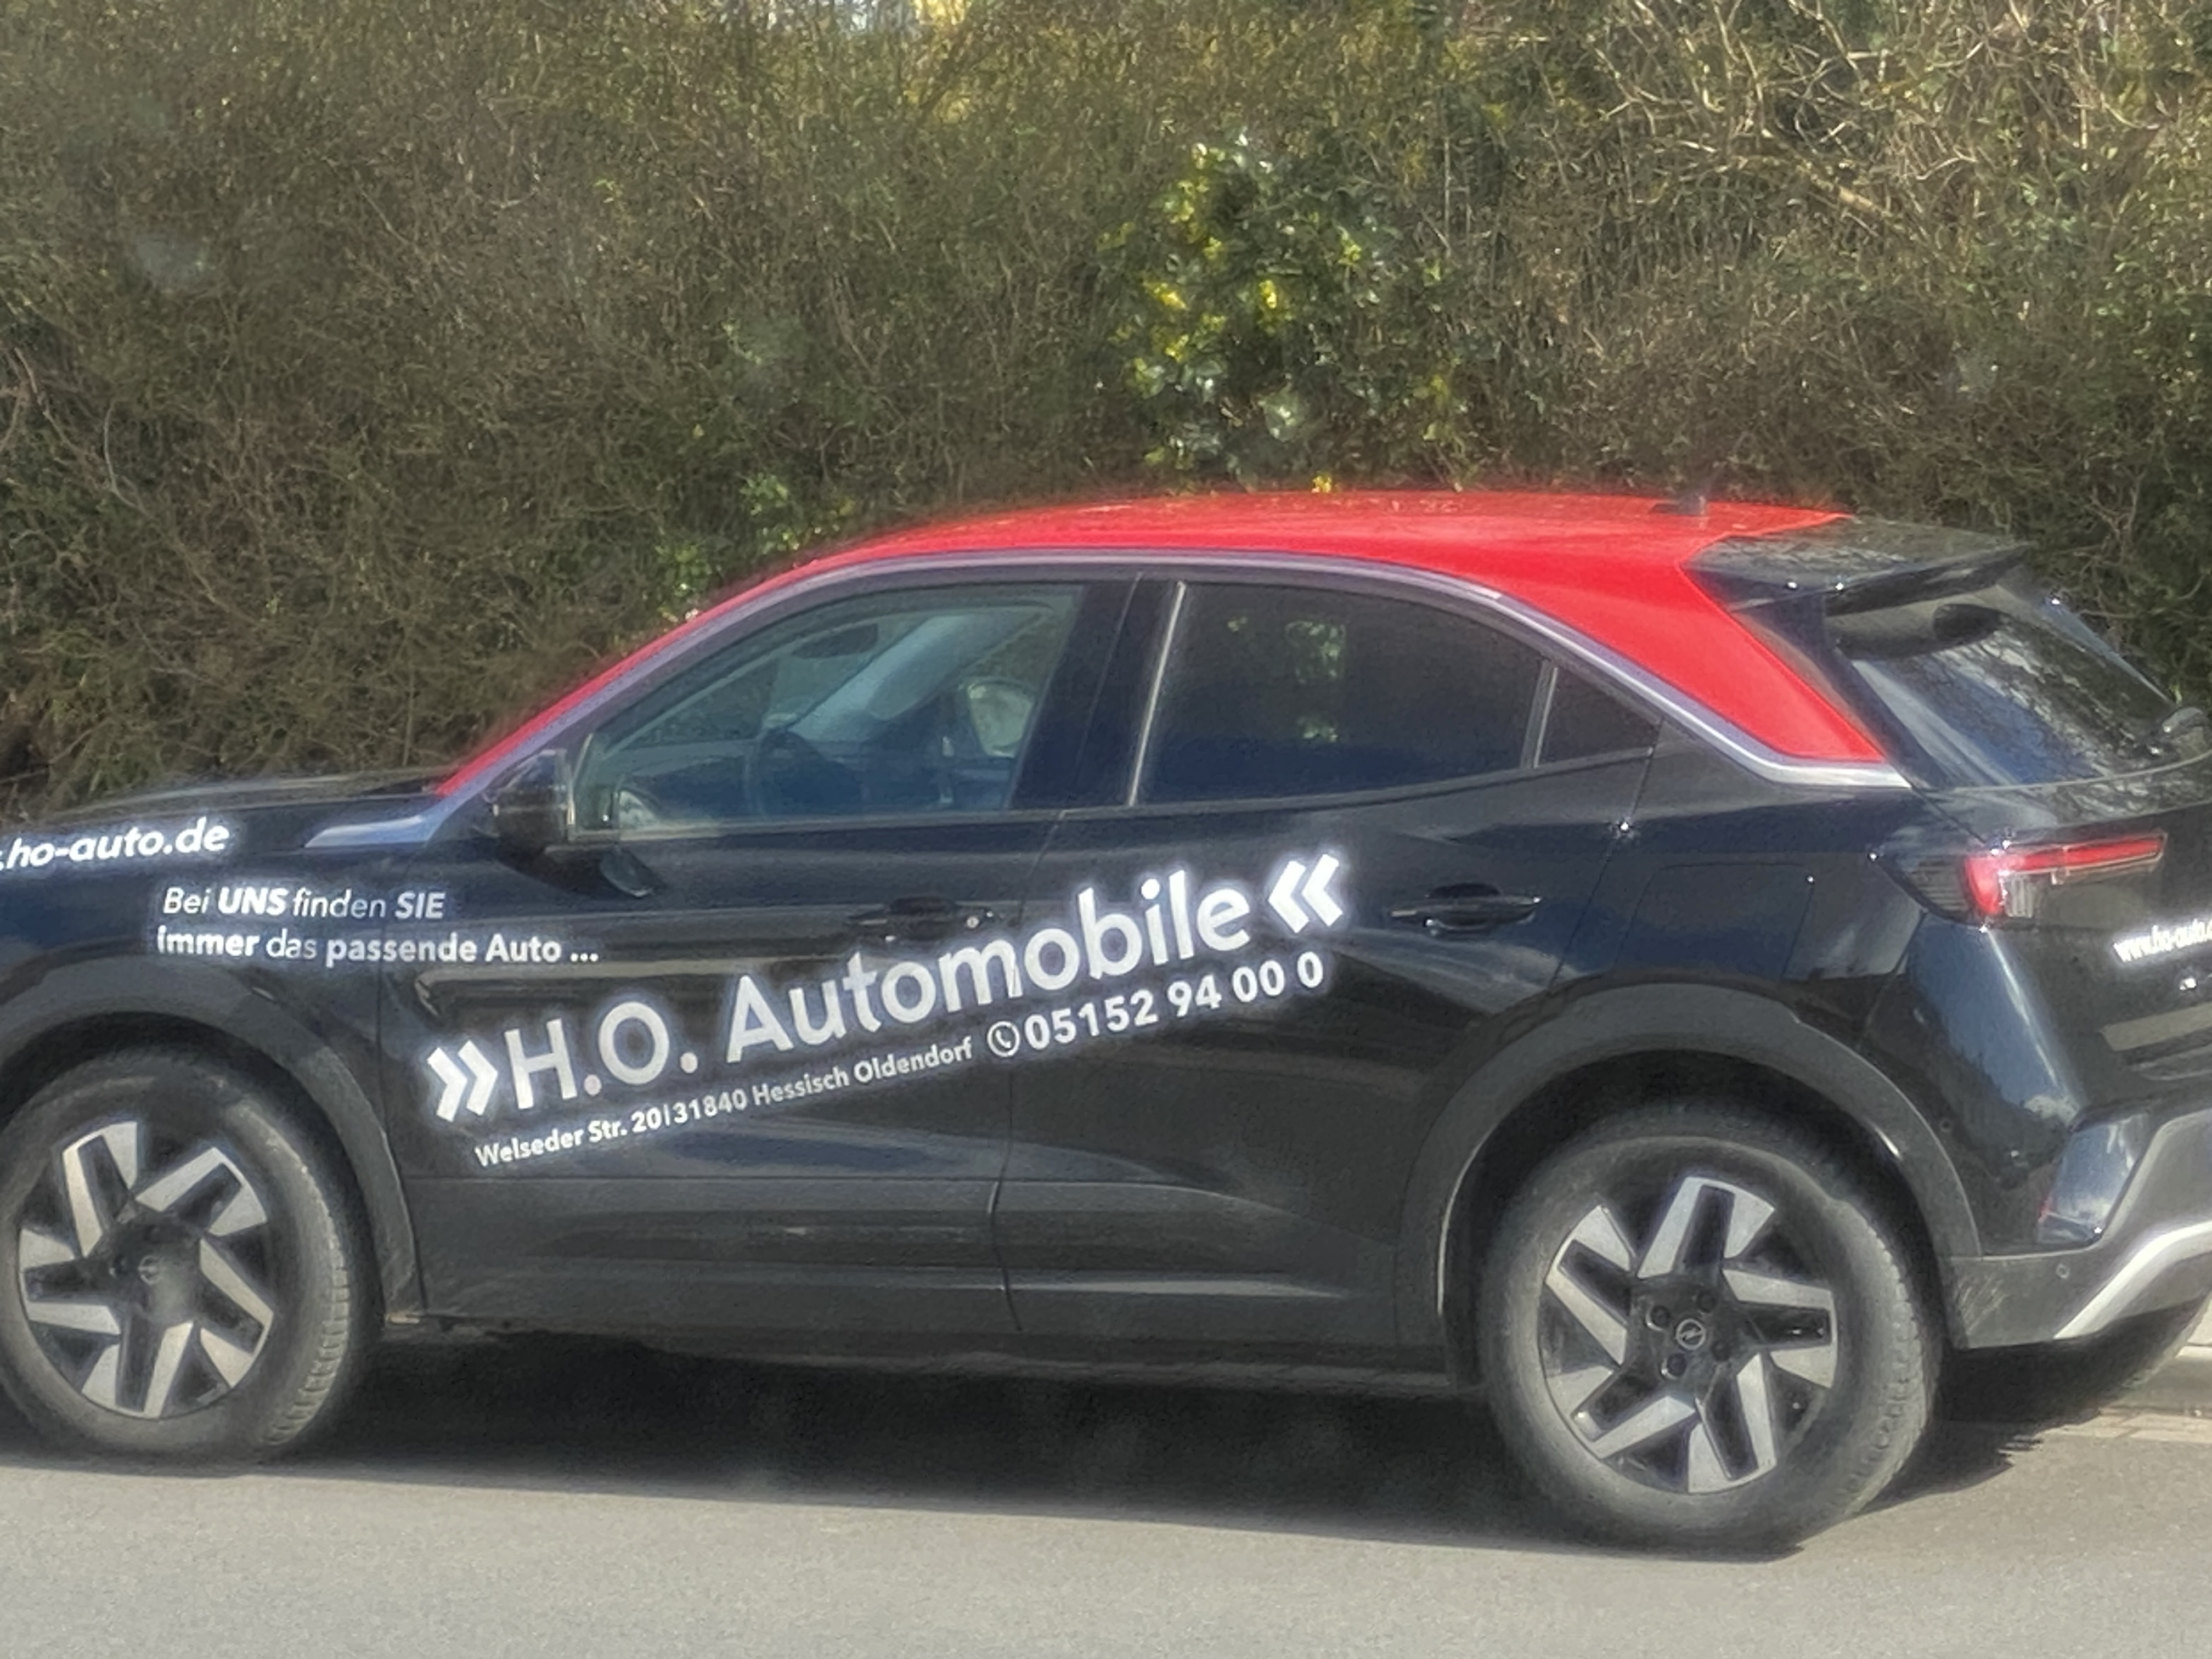 Bild 1 H.O. Automobile GmbH in Hessisch Oldendorf